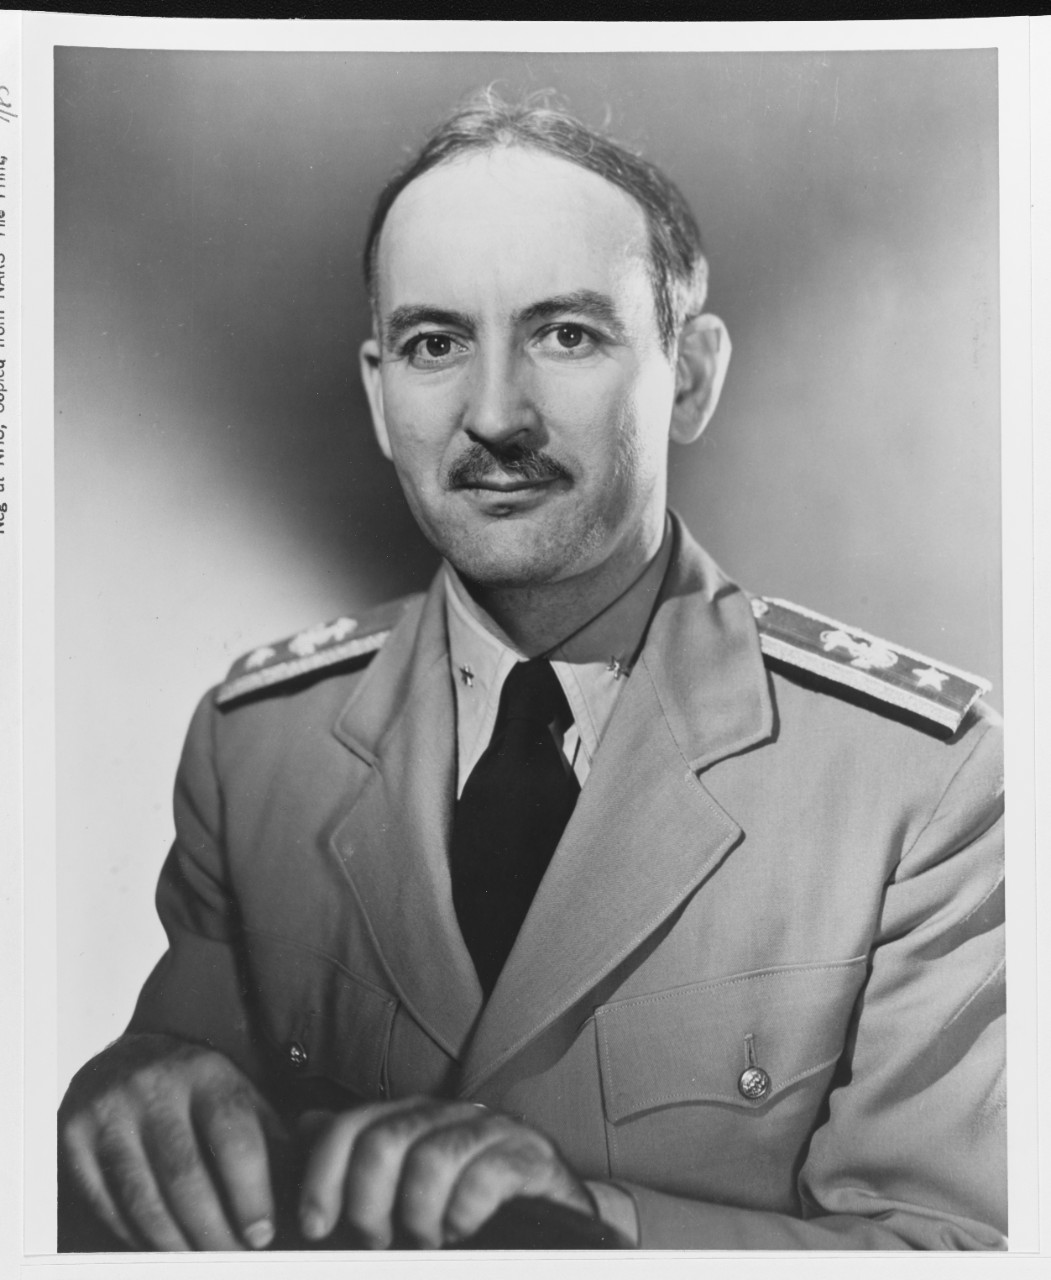 Commodore Ernest M. Eller, USN